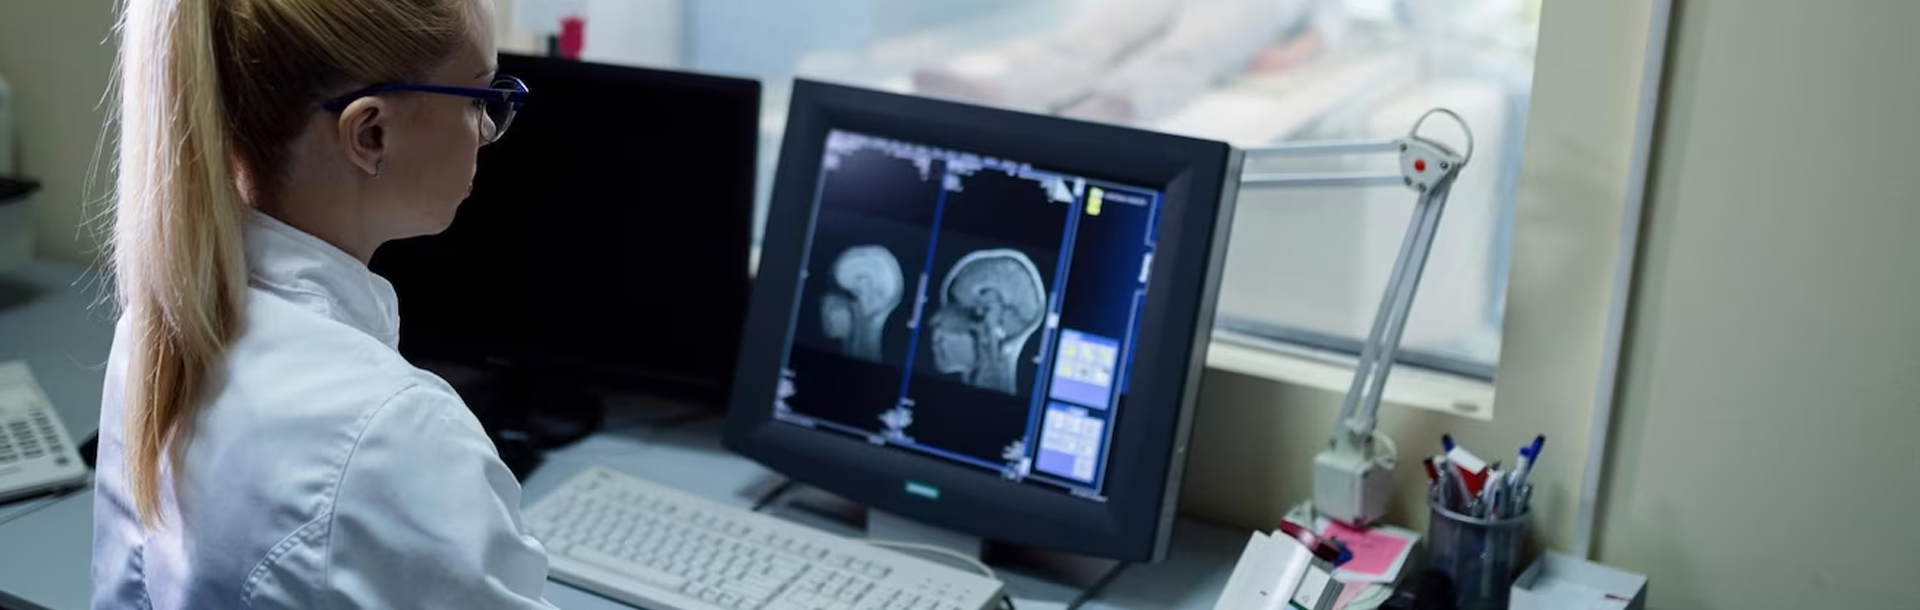 Ärztin sitzt am Computer und wertet Röntgenbilder aus